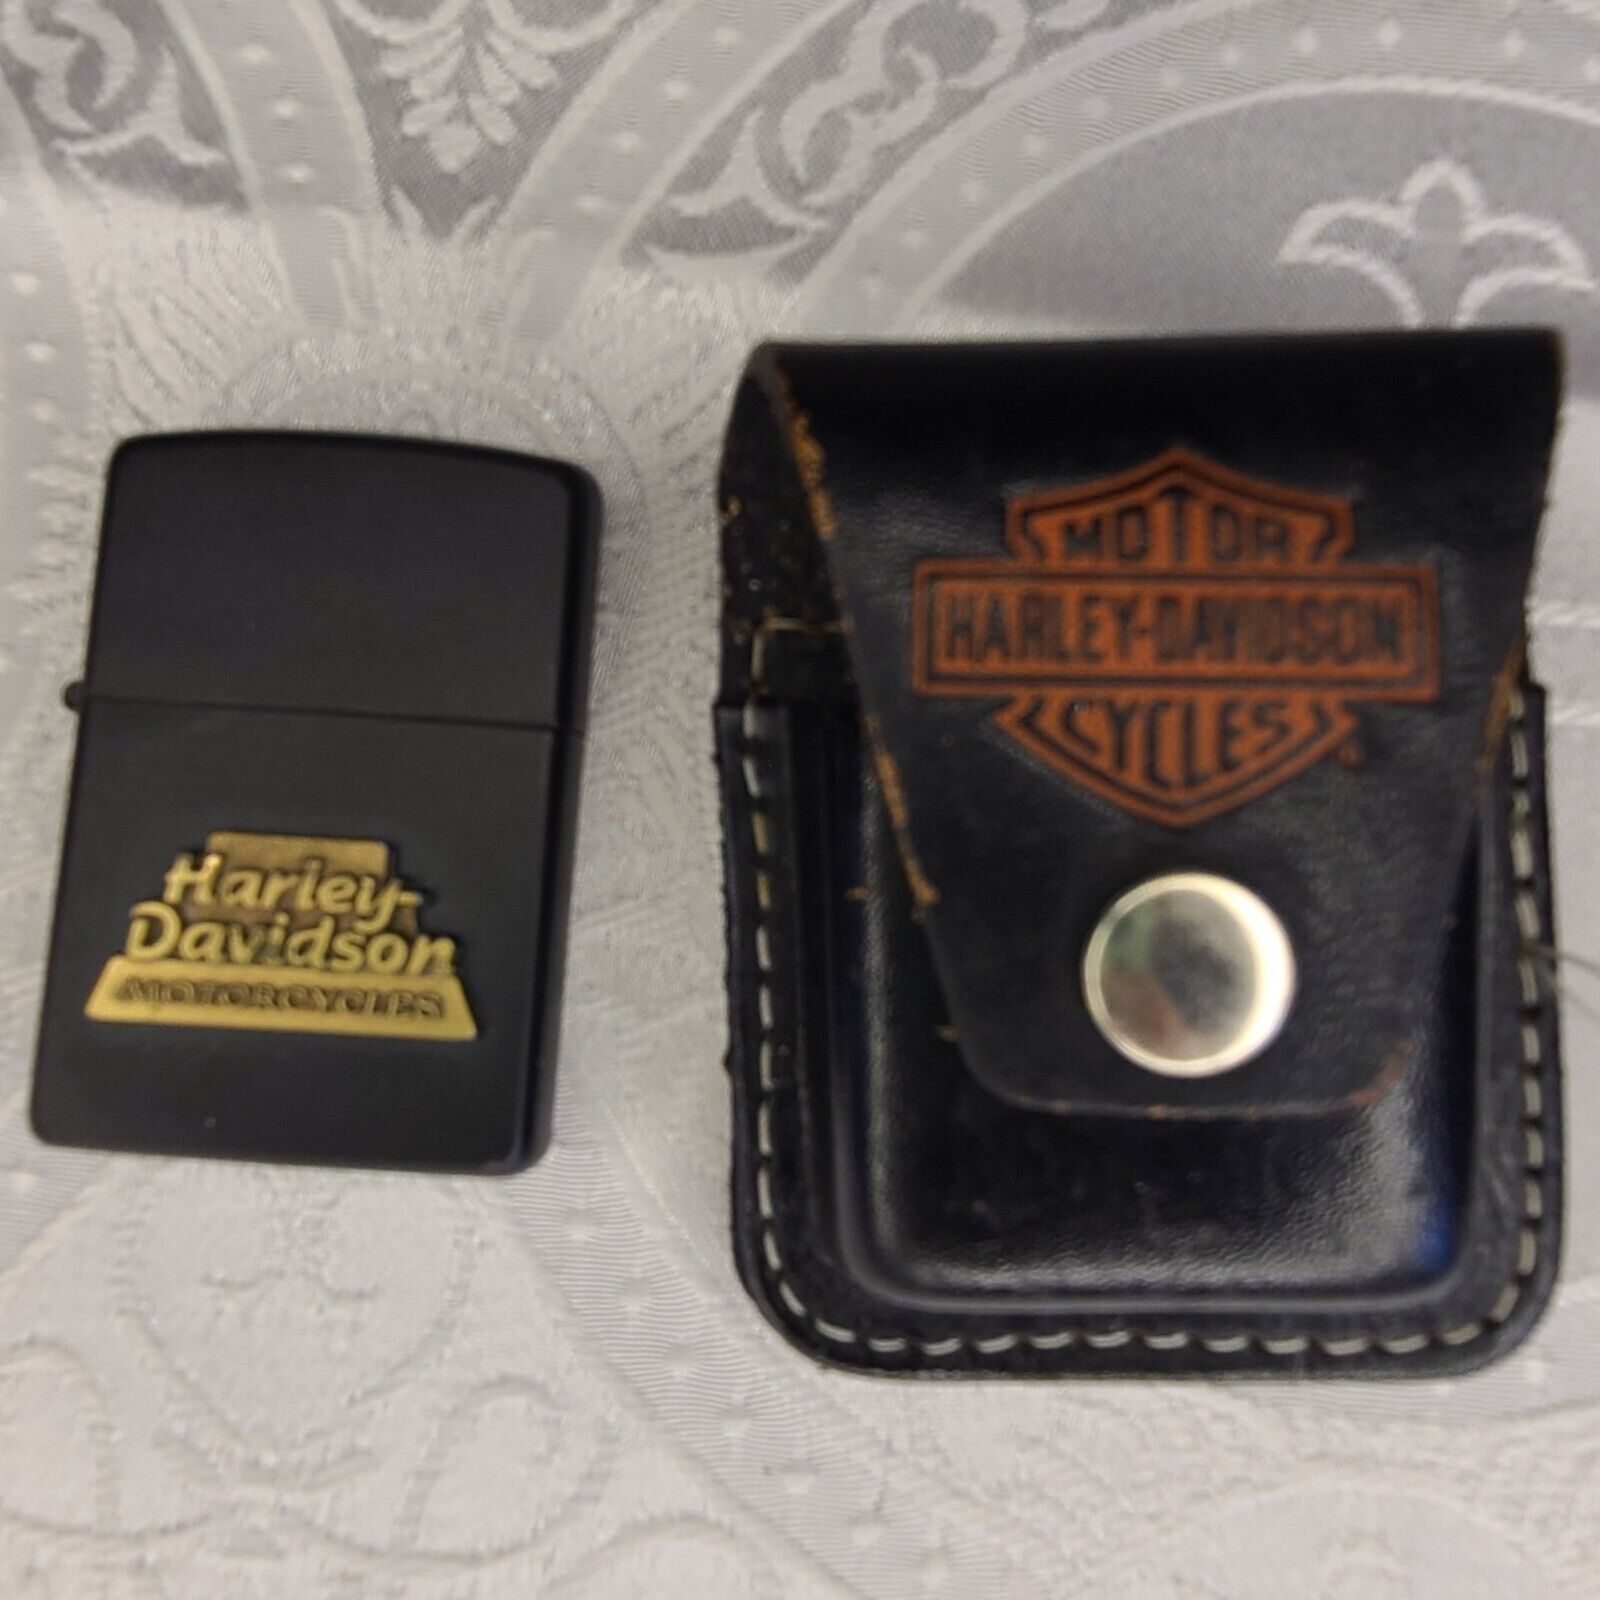 Harley davidson lighter with case